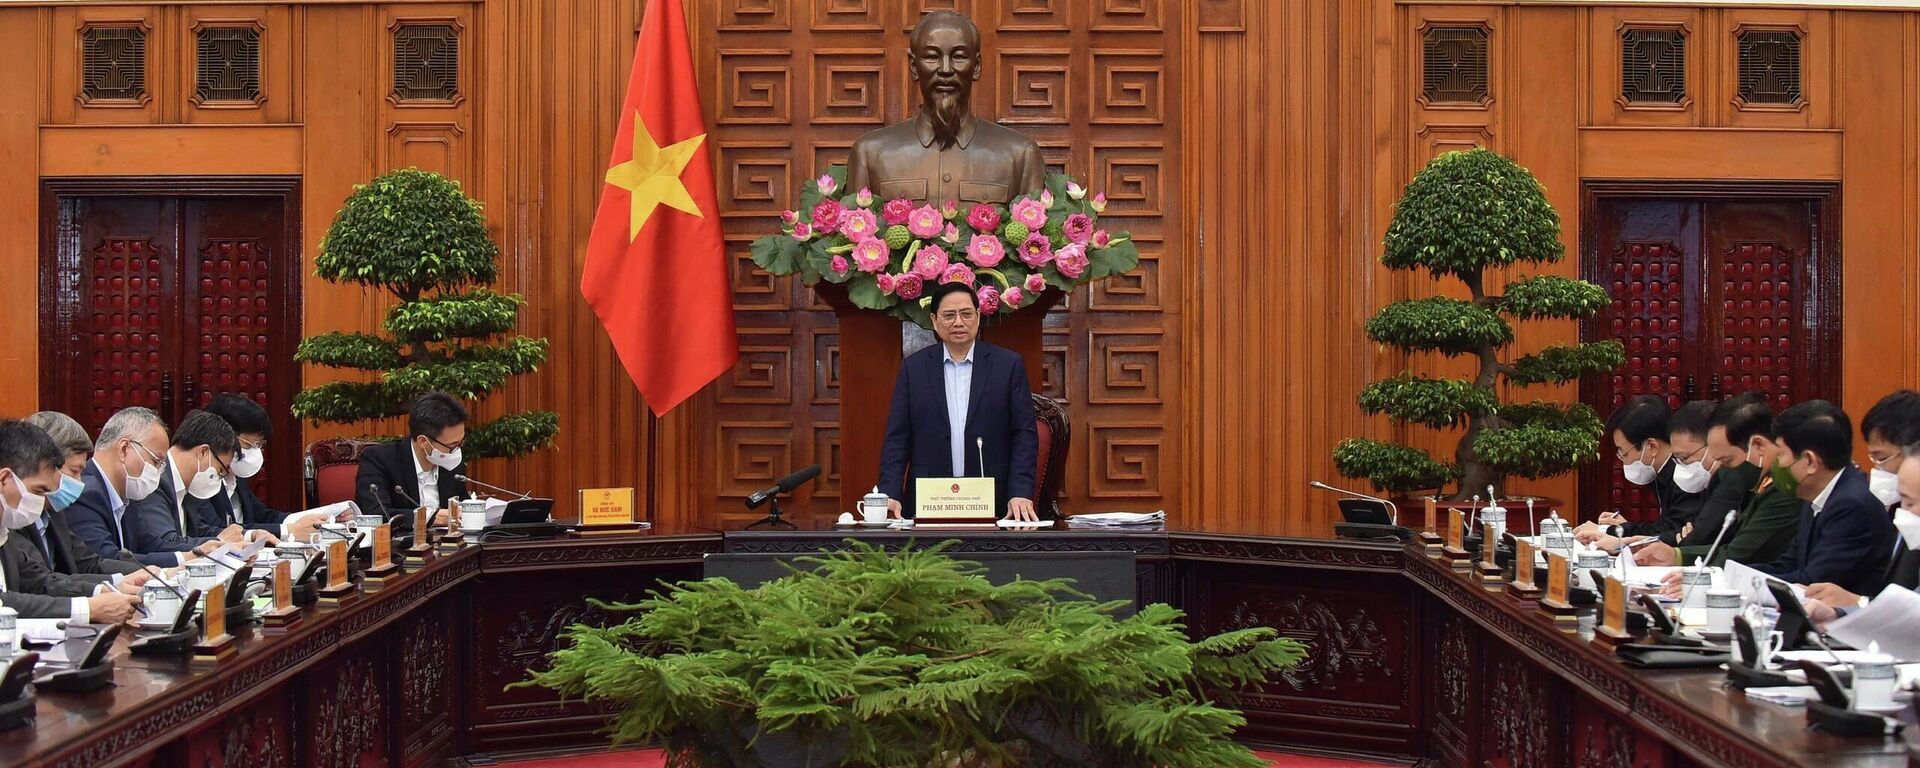 Thủ tướng Phạm Minh Chính chủ trì họp về việc nhập khẩu, sản xuất vaccine, thuốc điều trị COVID-19 - Sputnik Việt Nam, 1920, 27.11.2021